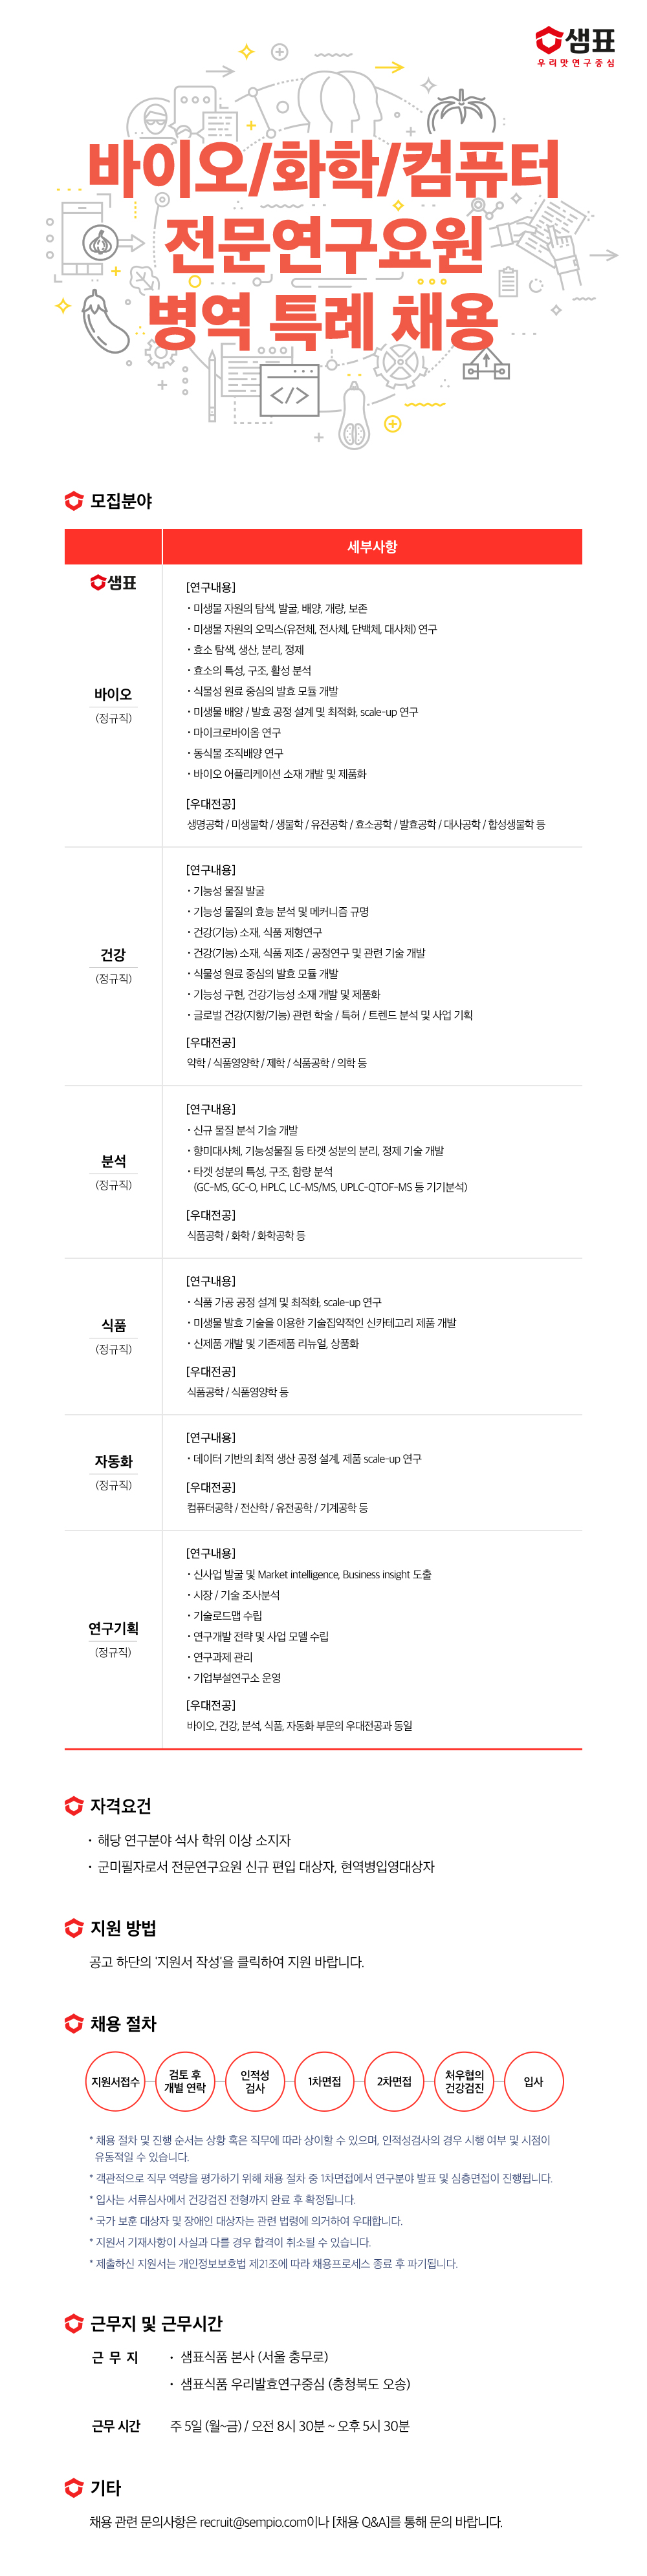 샘표식품_전문연구요원병역특례_22년 7월.jpg